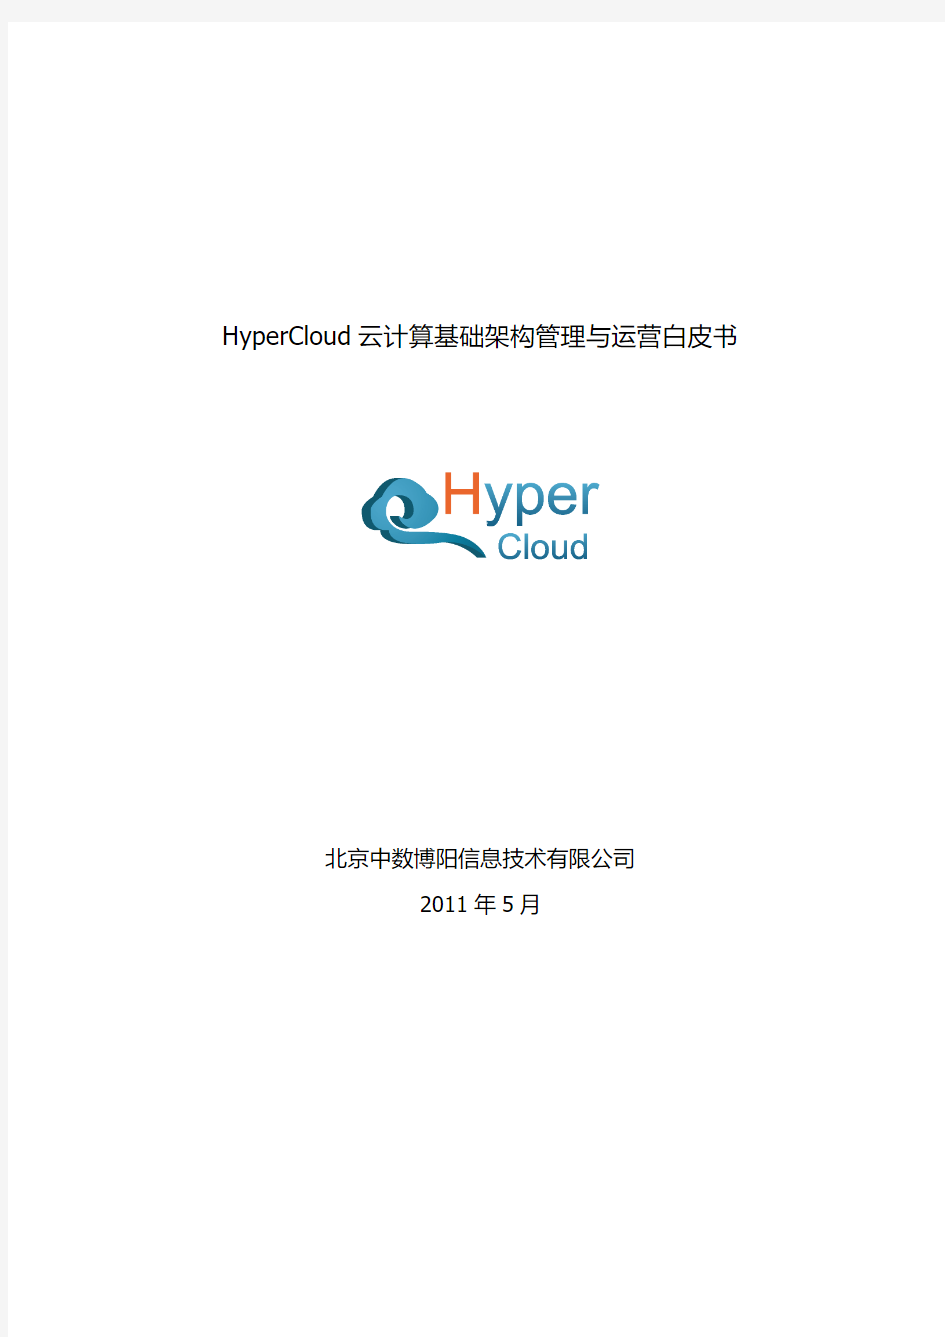 HyperCloud云计算基础架构管理与运营白皮书